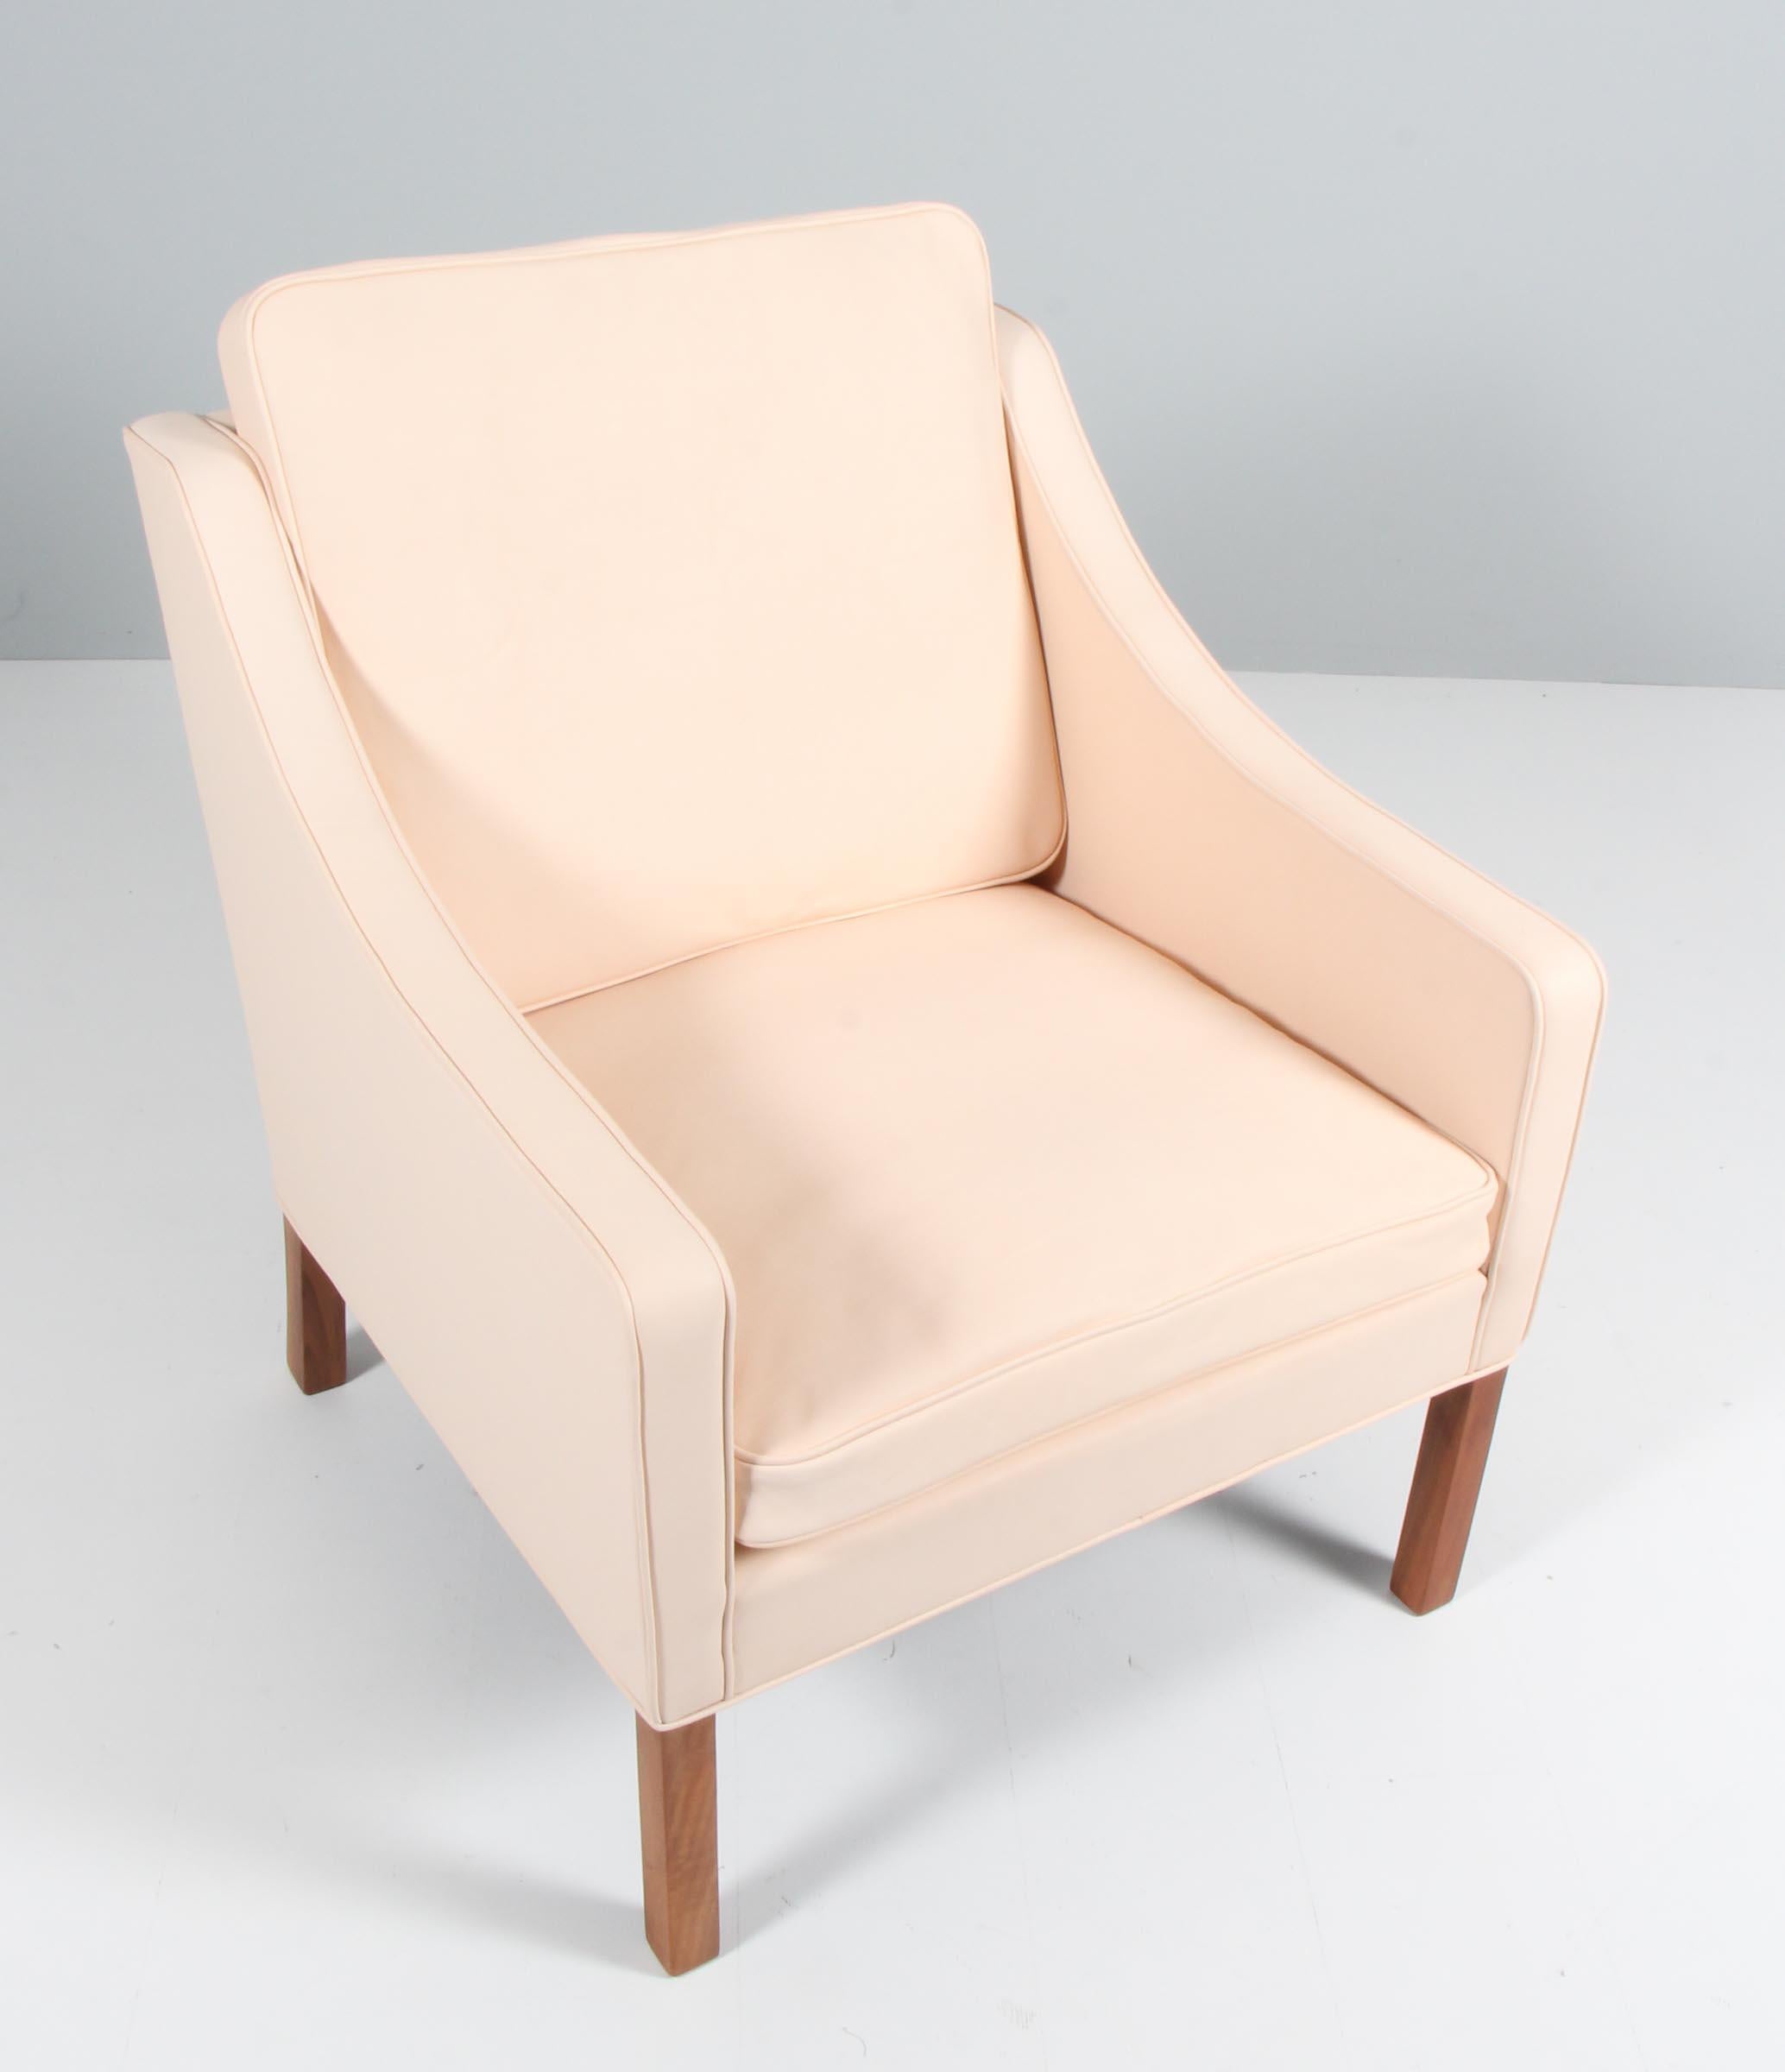 Chaise longue Børge Mogensen nouvellement recouverte de cuir nature aniline.

Pieds en teck.

Modèle 2207, fabriqué par Fredericia furniture.